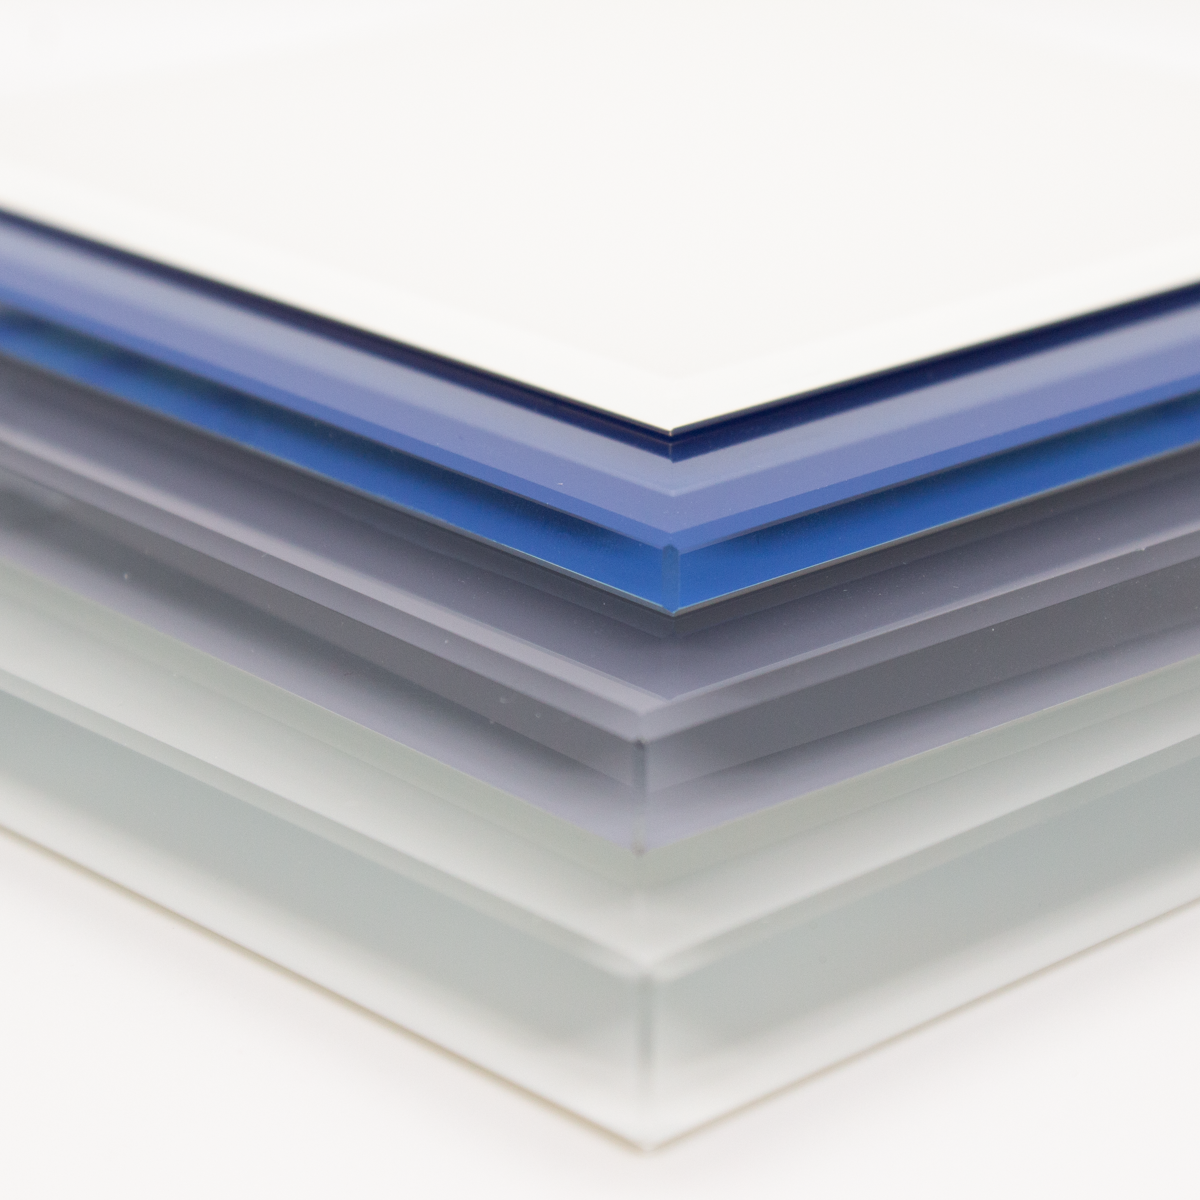 6mm Custom Color Glass Sample - Gloss